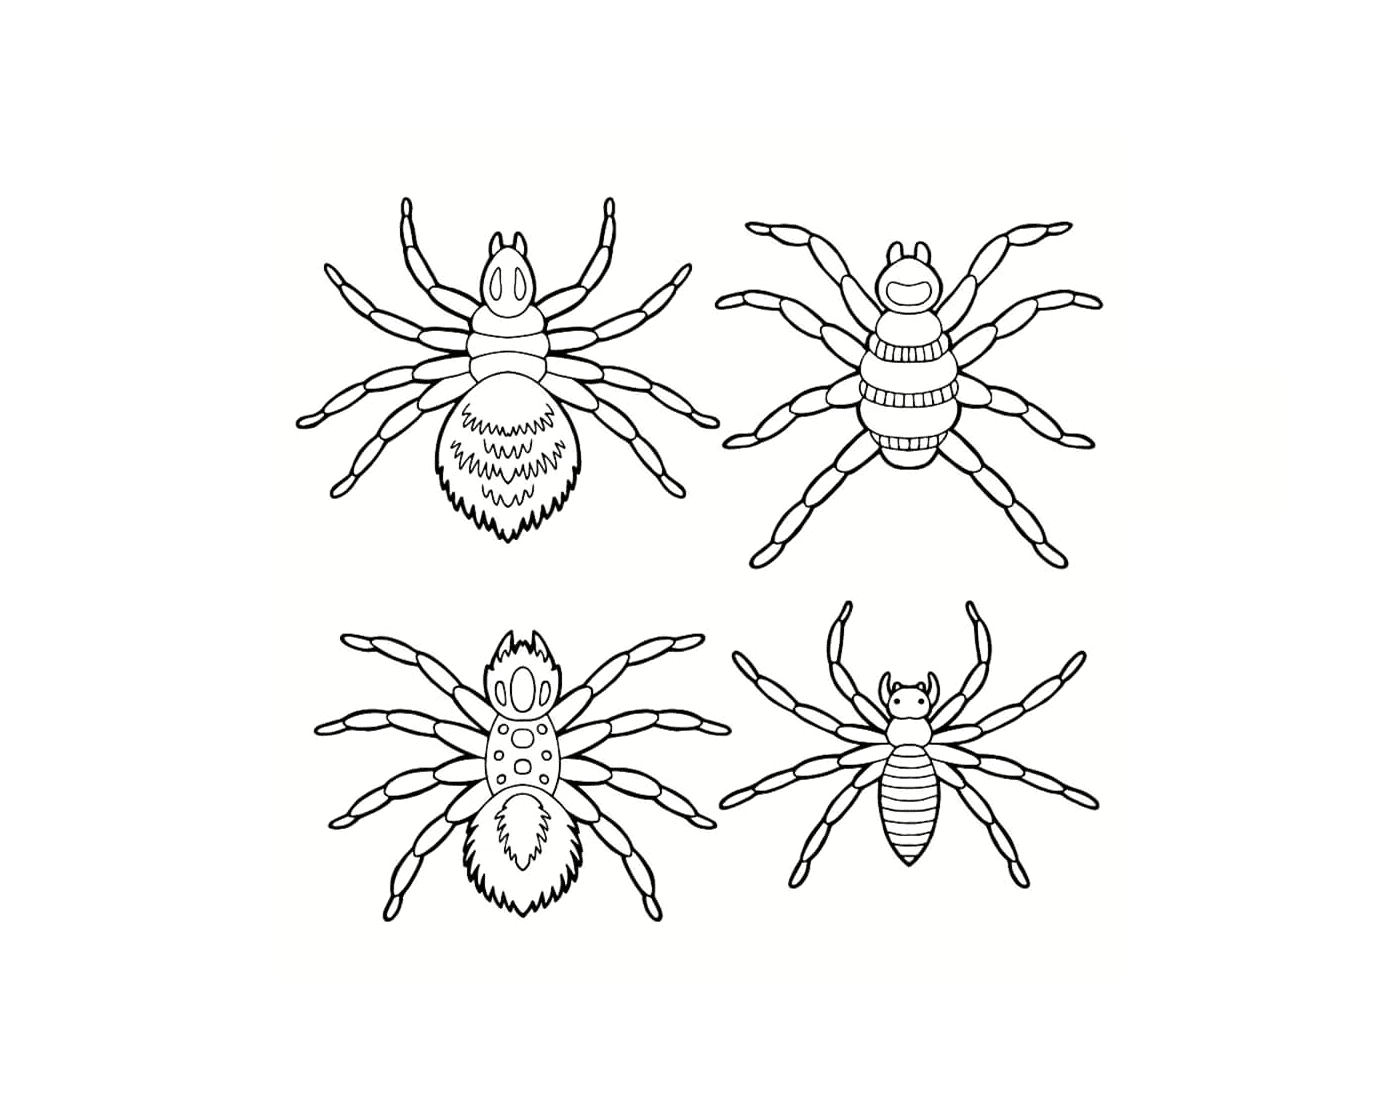  Un conjunto de arañas diferentes 